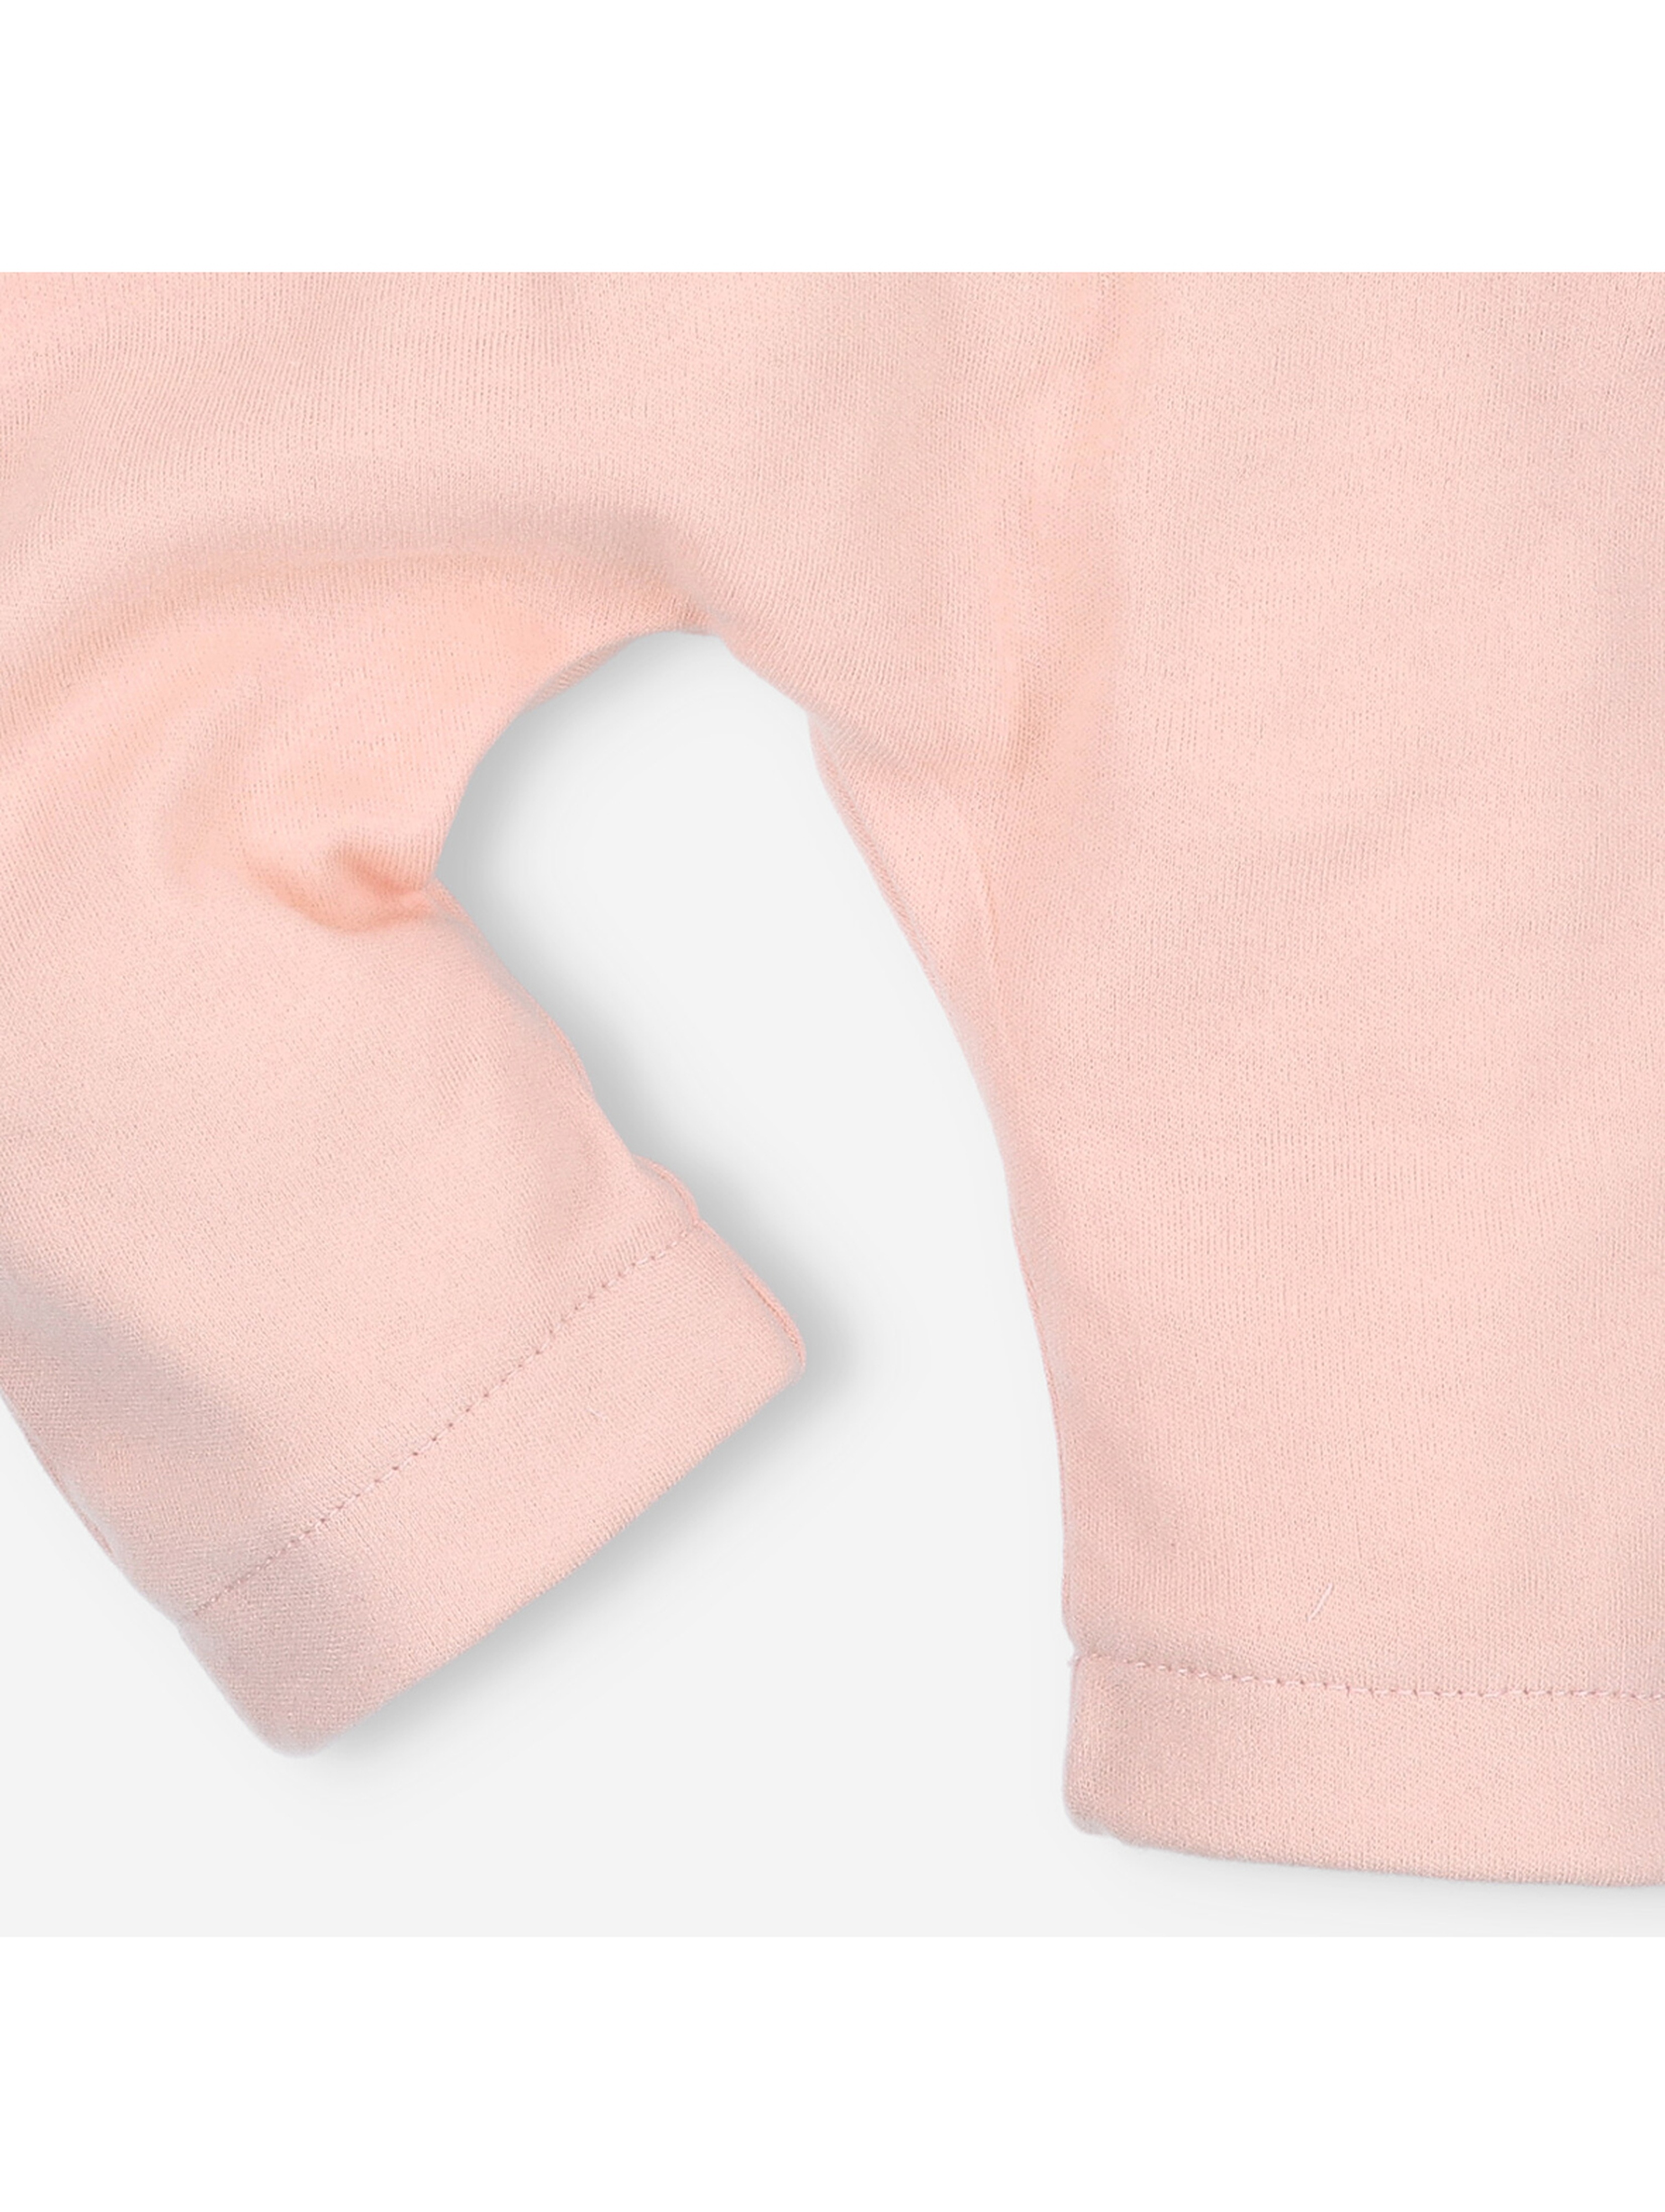 Spodnie niemowlęce z bawełny organicznej dla dziewczynki